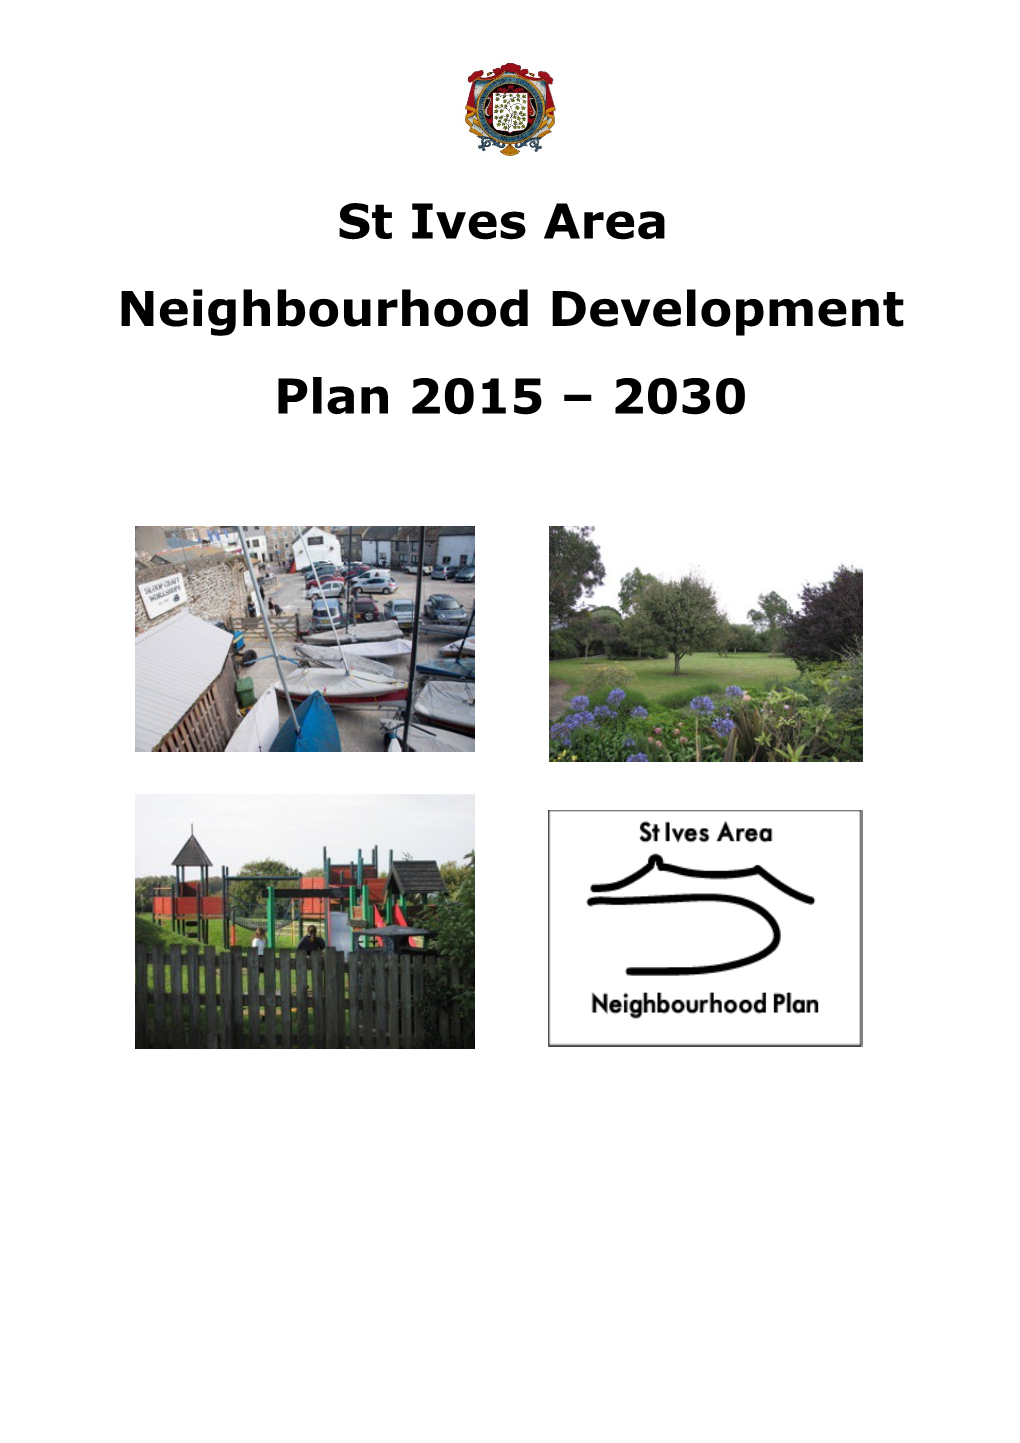 St Ives Area Neighbourhood Development Plan 2015 2030